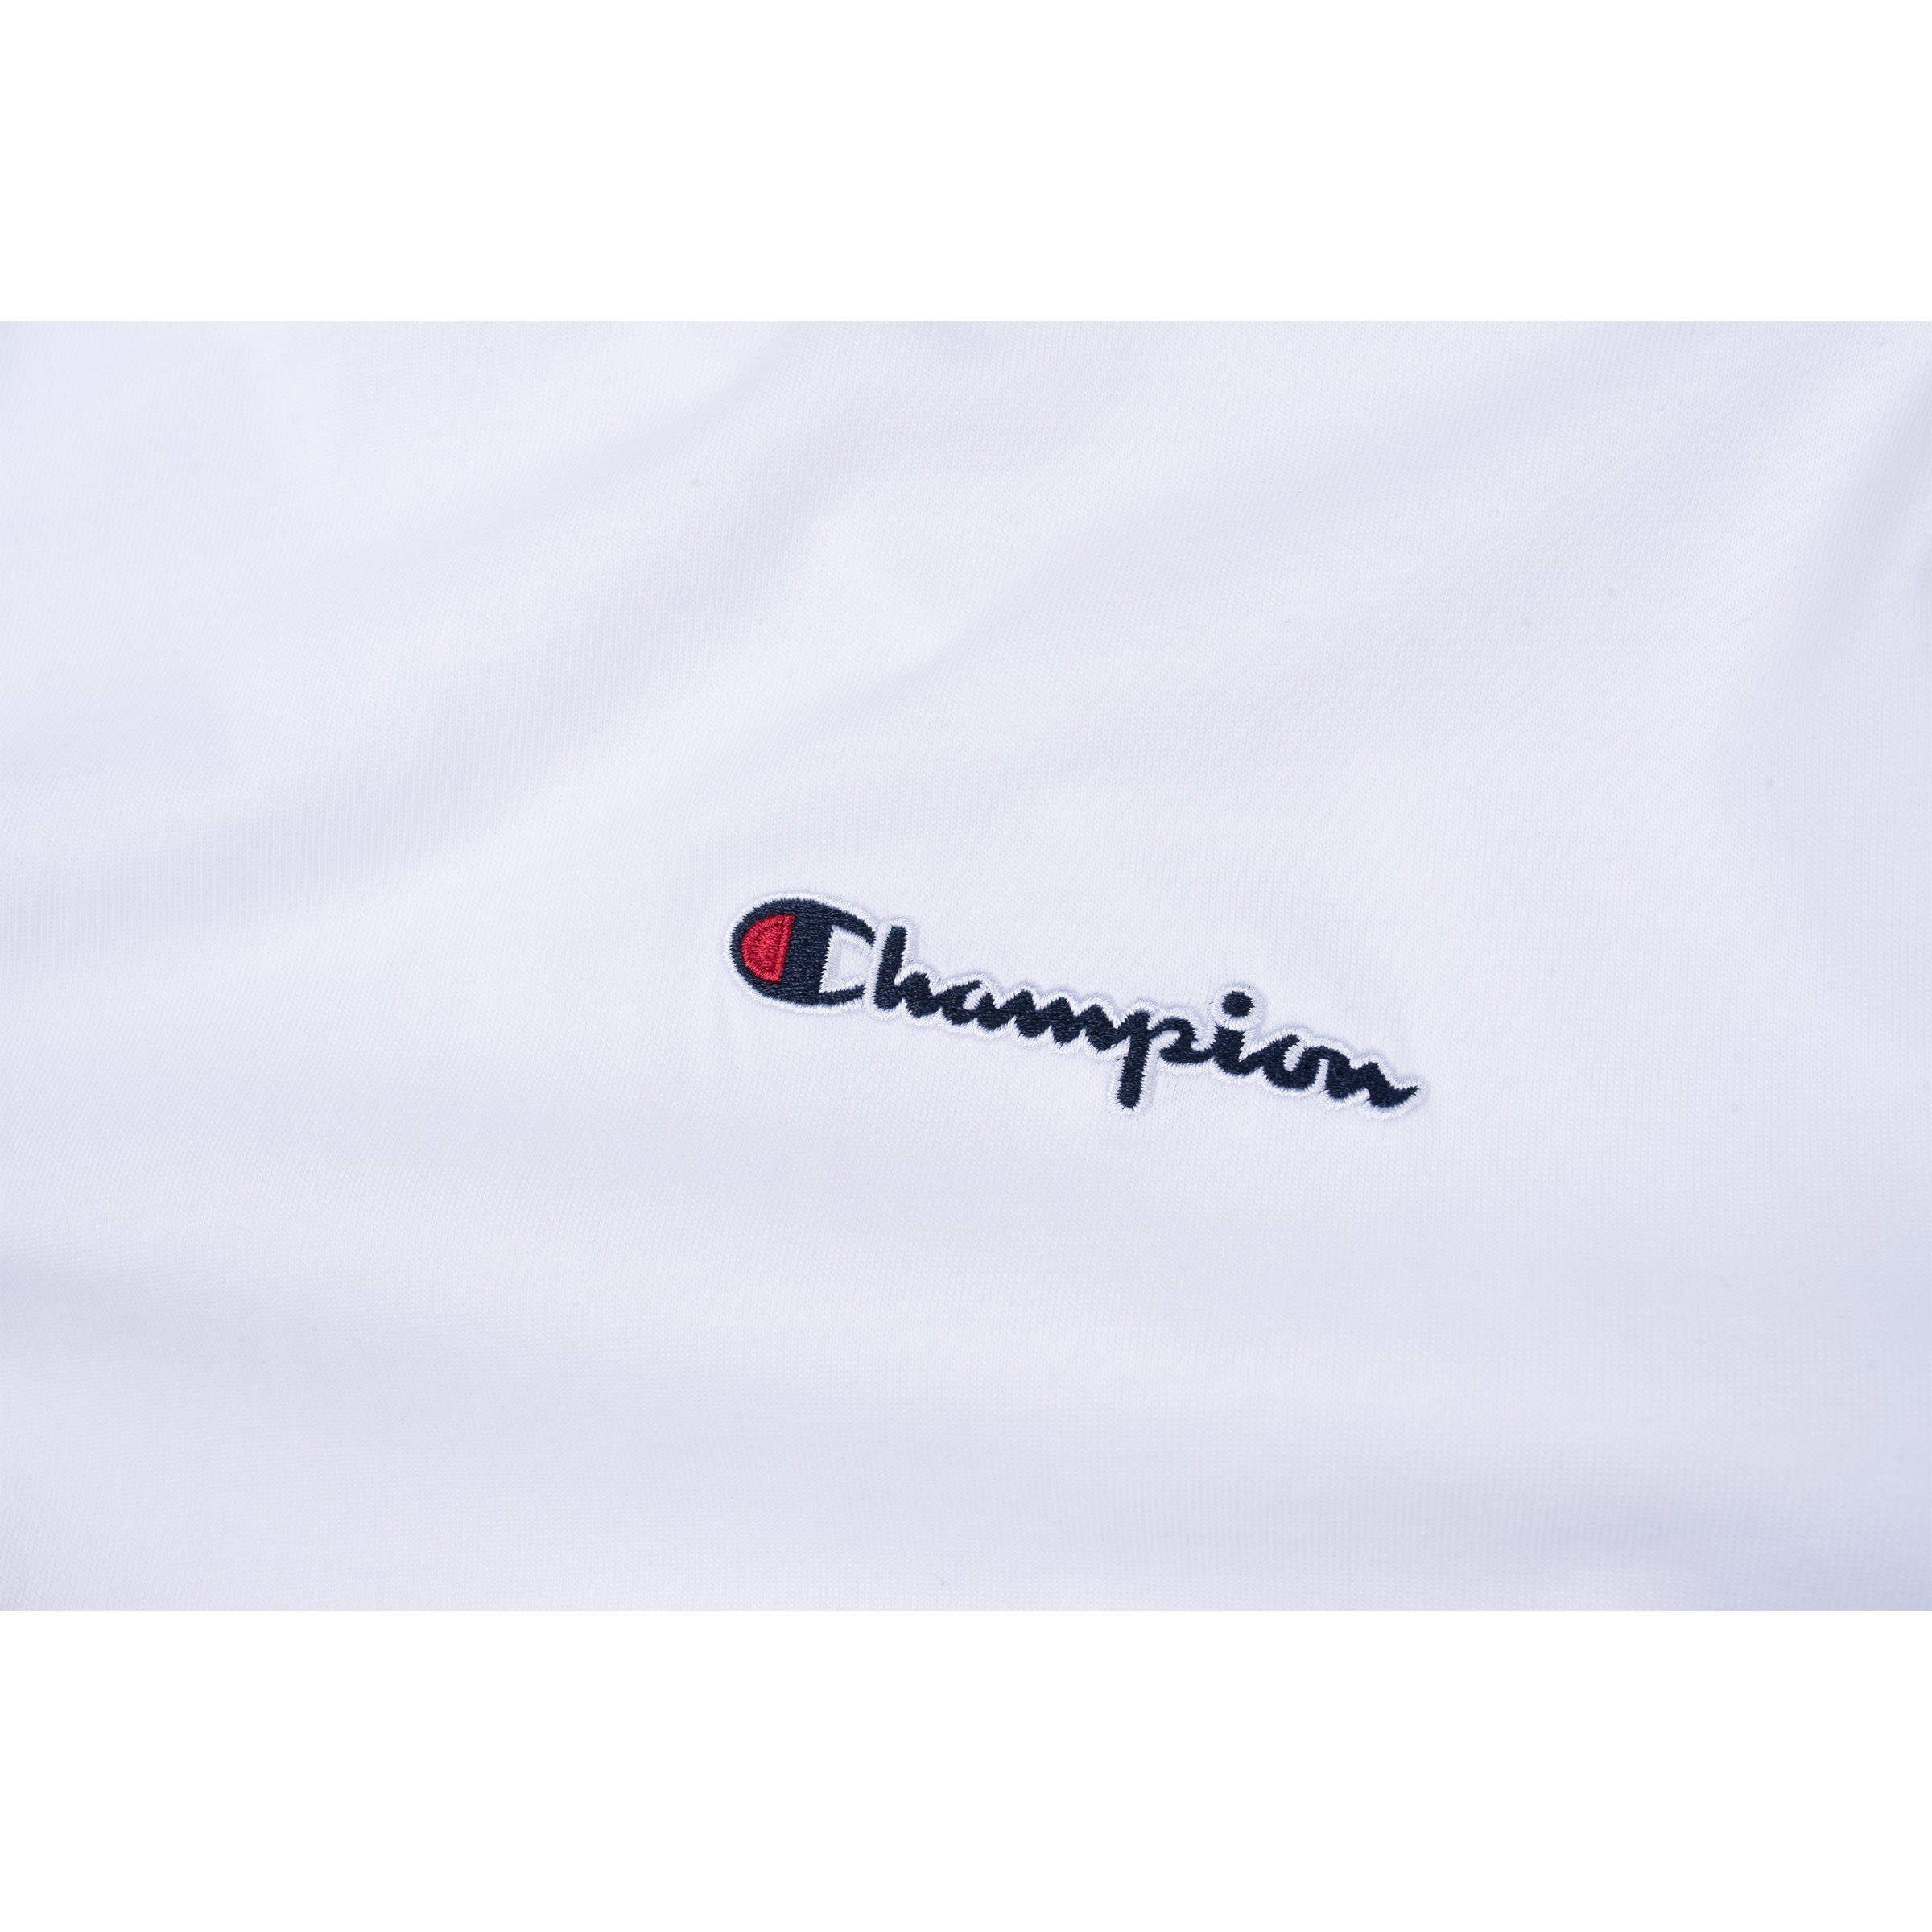 Champion T-Shirt Champion Herren 215943 Adult weiß (wht) T-Shirt Crewneck